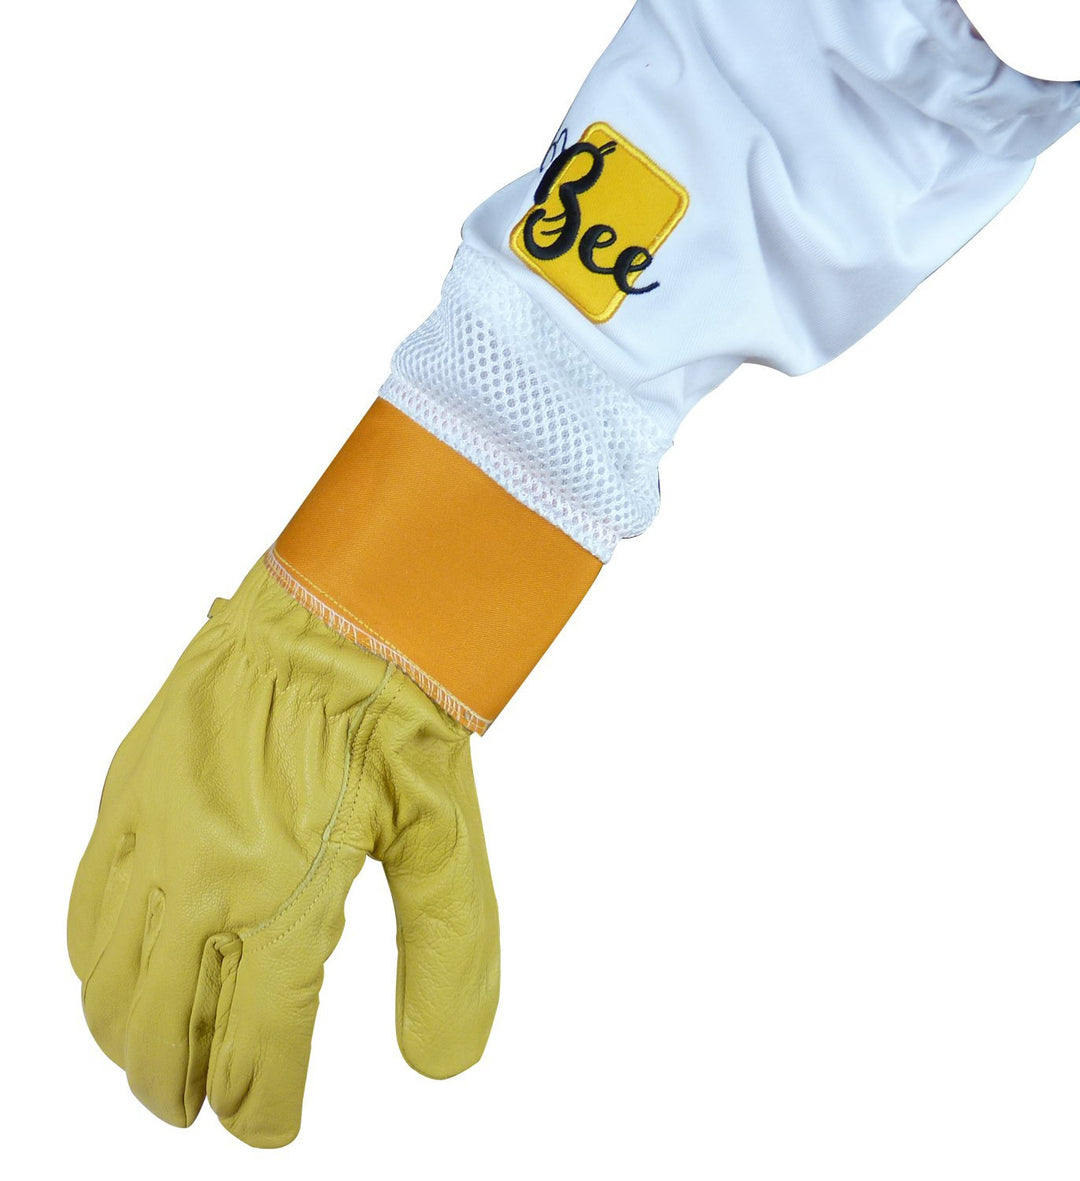 Vented Beekeeper Gloves